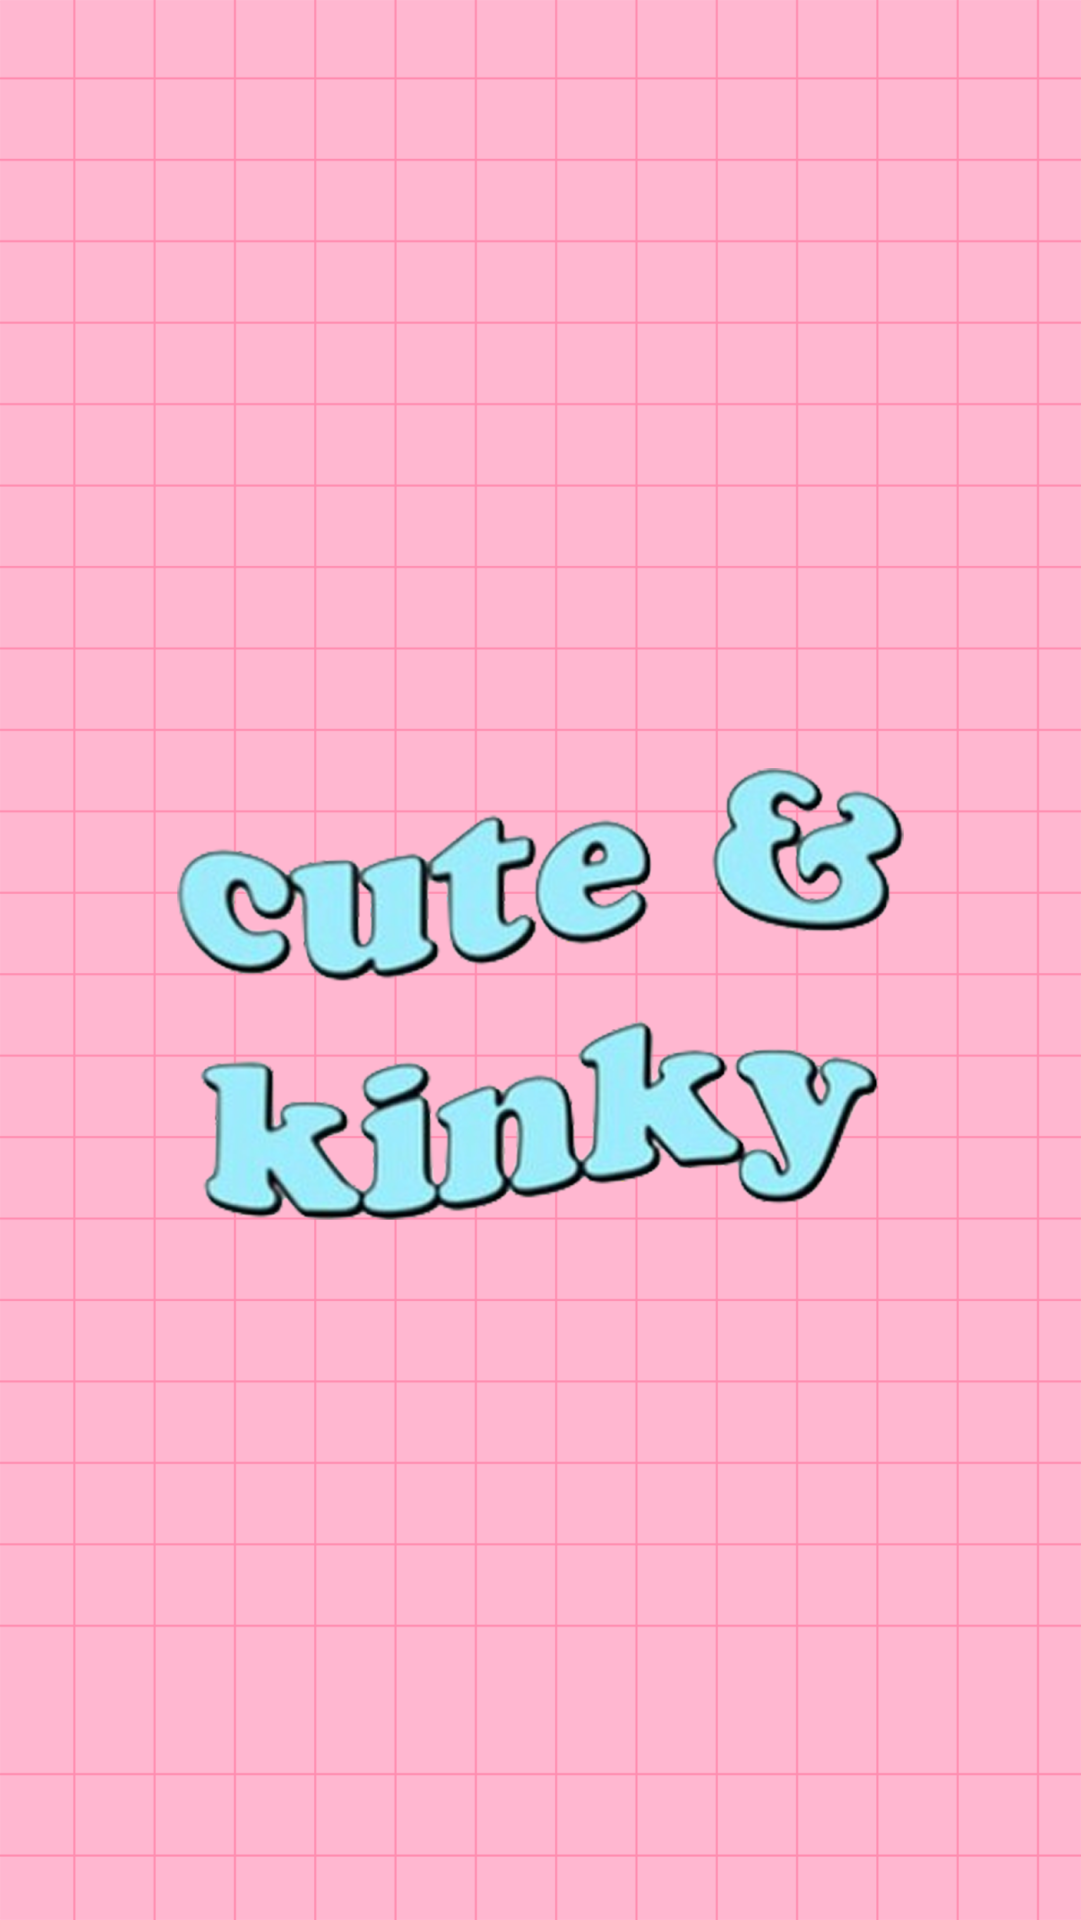 Cute and kinky